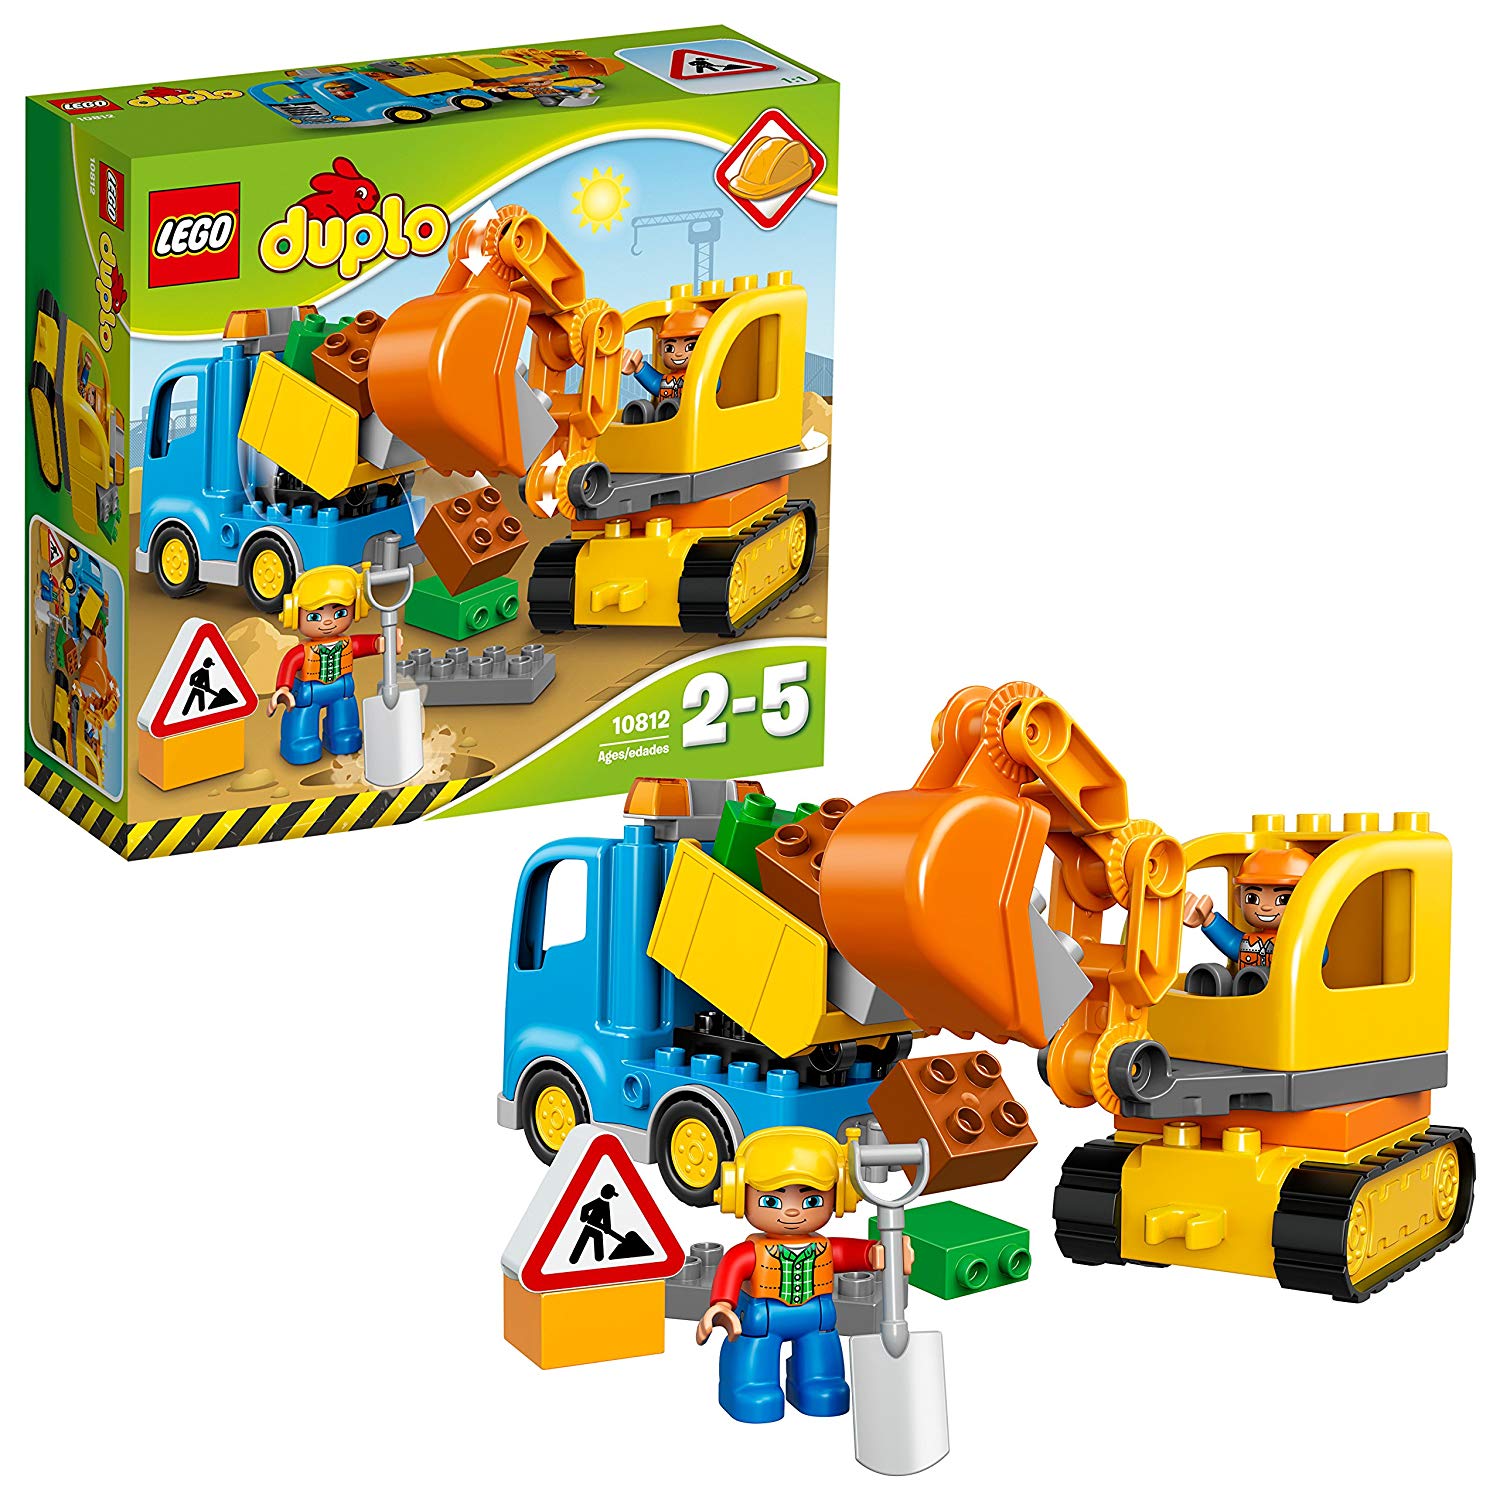 Het speelgoed set is geschikt voor peuters vanaf 2 jaar en bevat 2 arbeiders met bouwhelmen. 
Bevat een kipwagen en een rupskraan